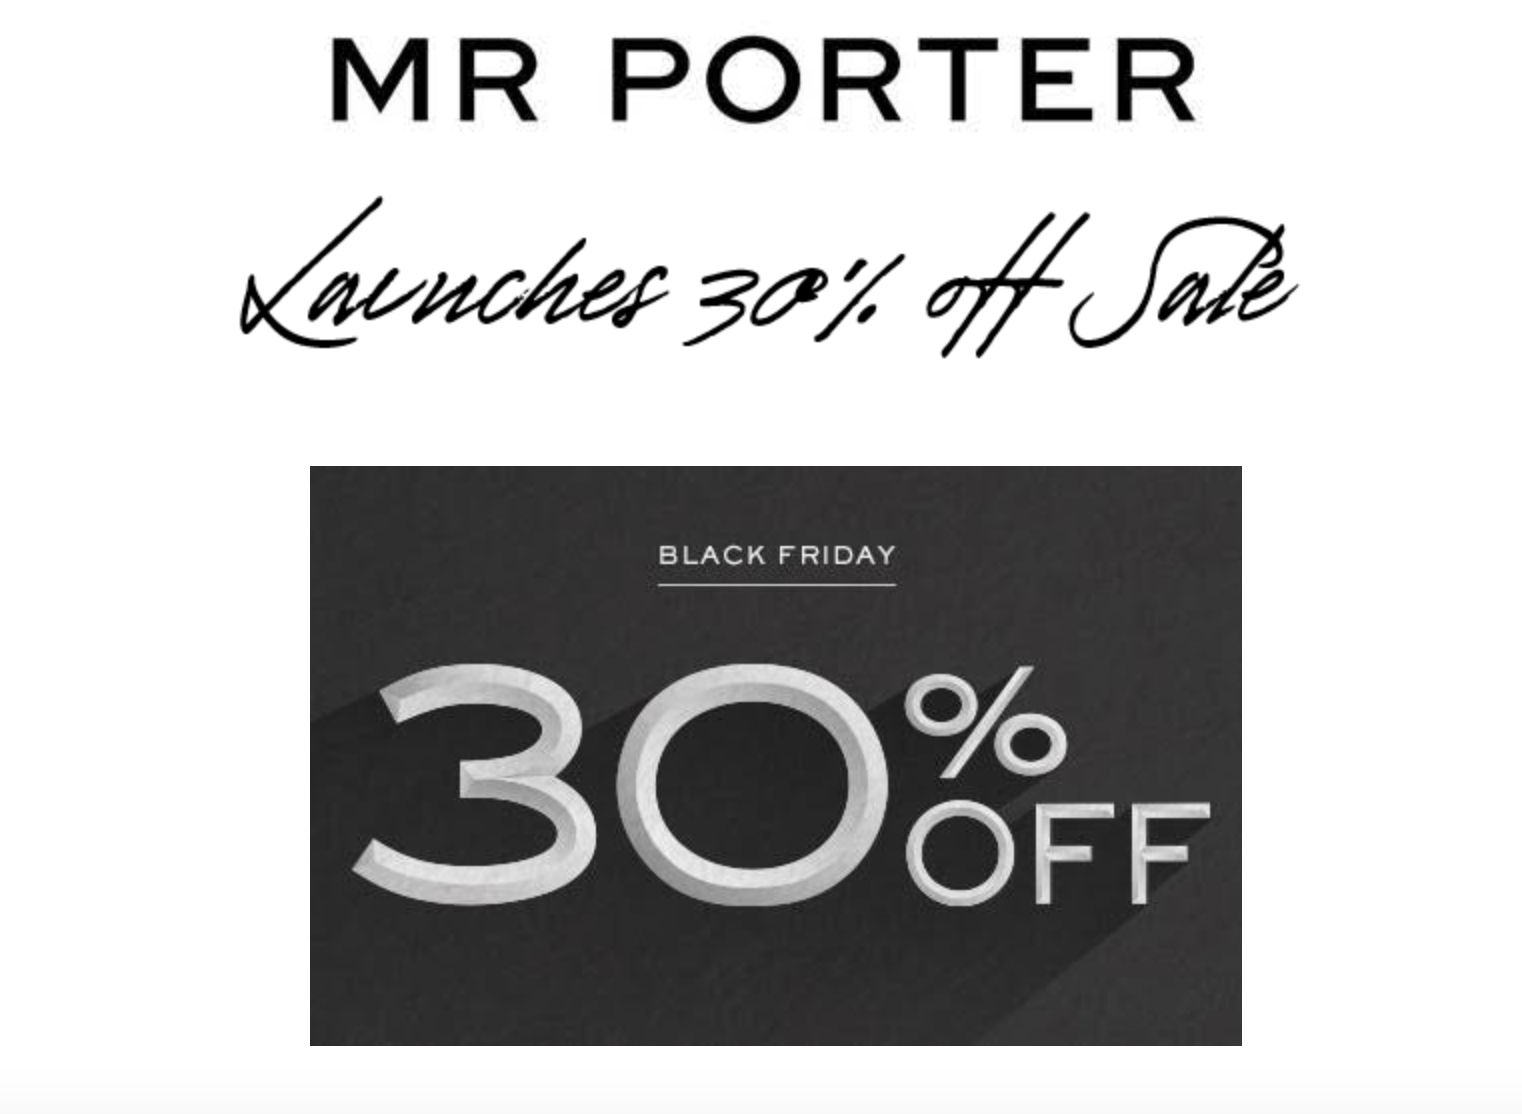 Mr Porter Black Friday Sale 2017